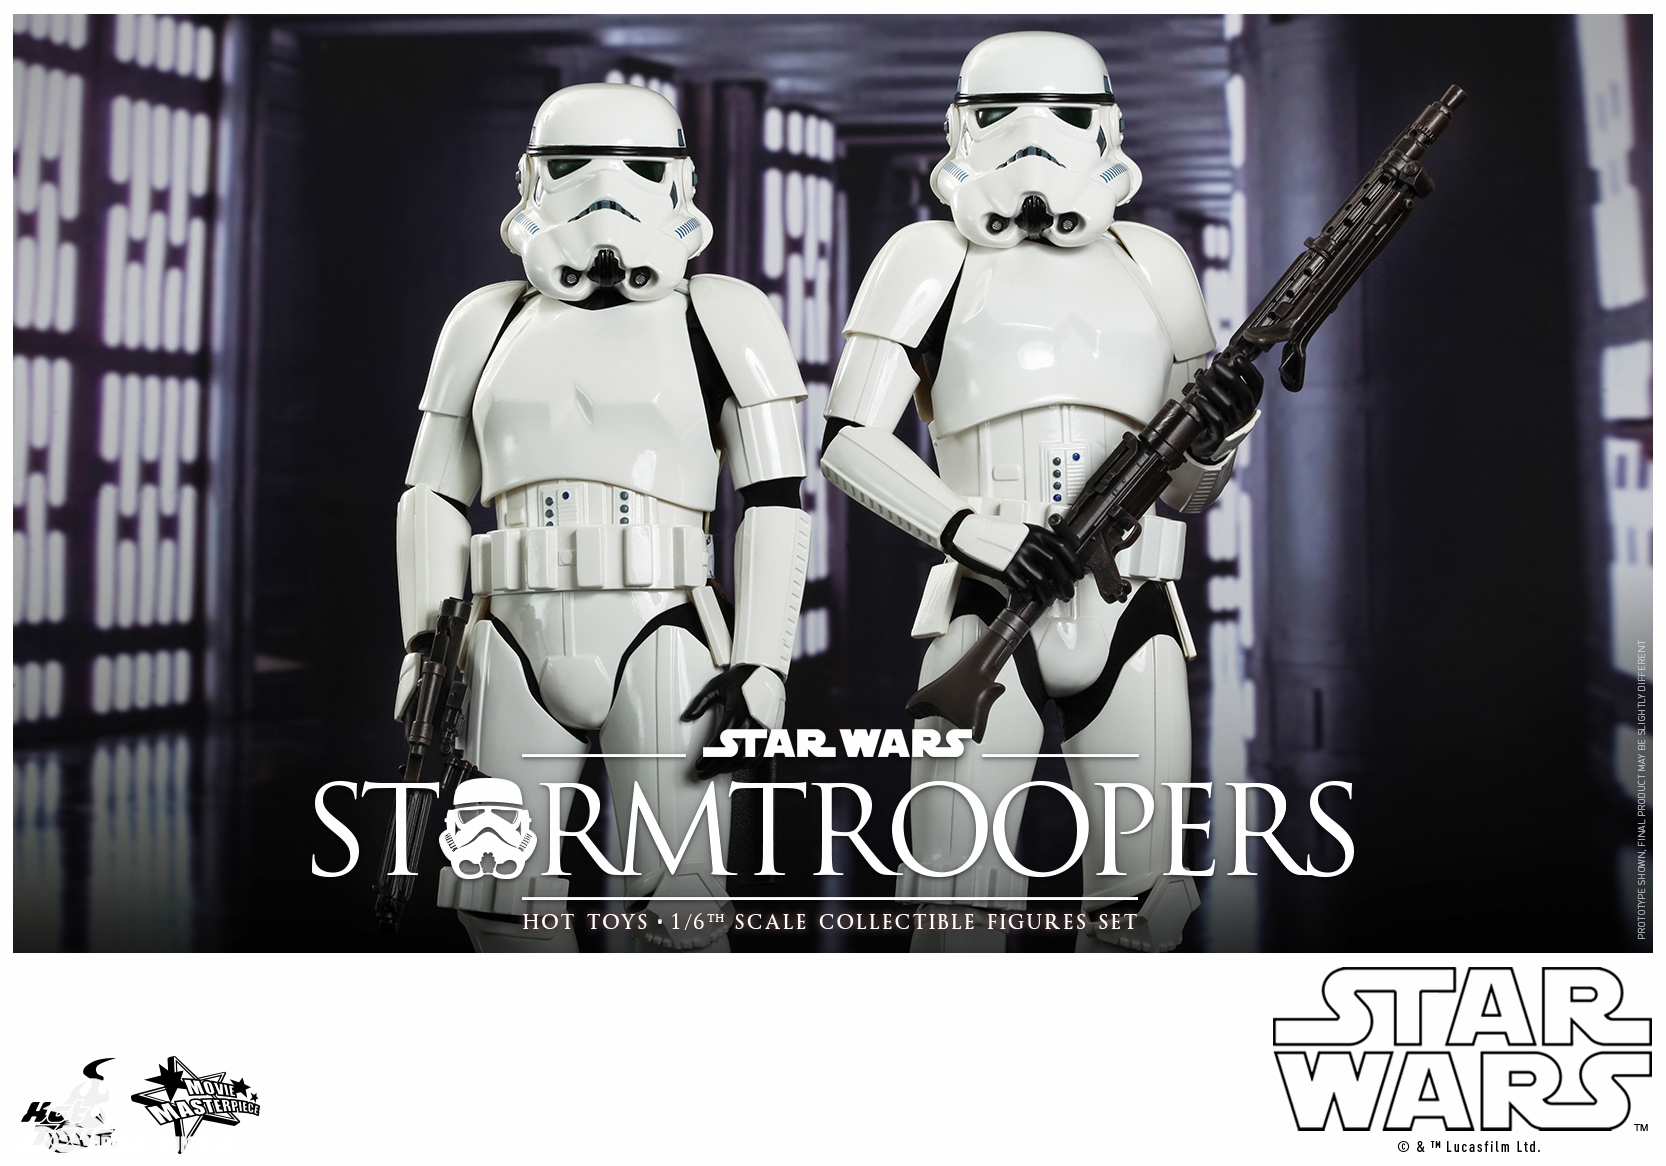 Hot-Toys-Movie-Masterpiece-Series-Star-Wars-Stormtroopers-004.jpg